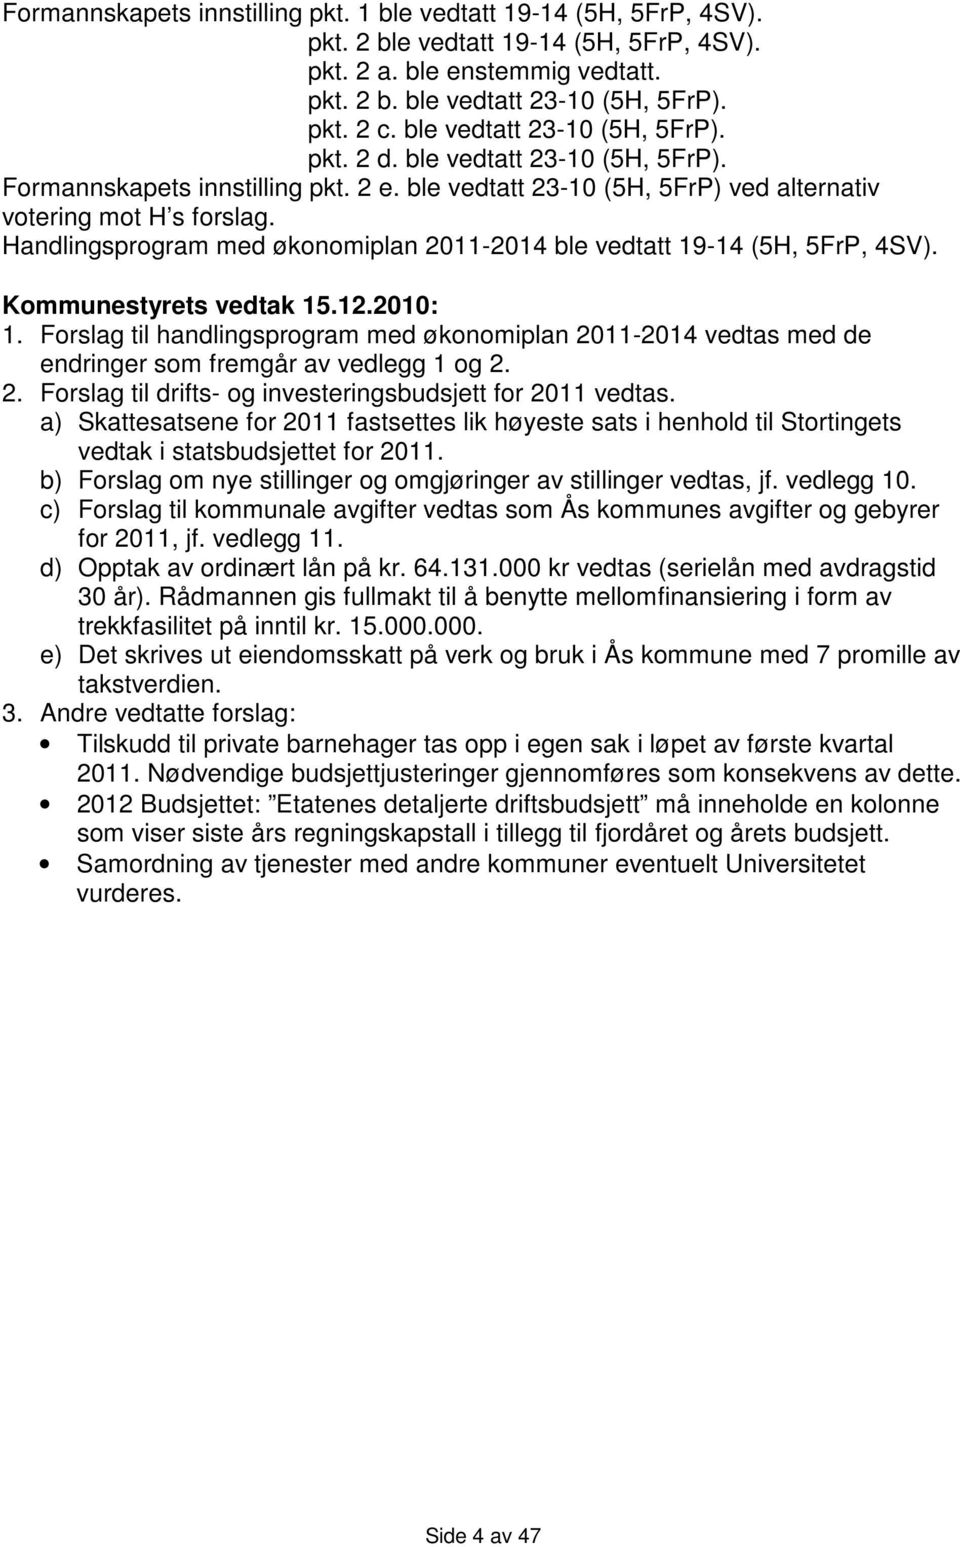 Handlingsprogram med økonomiplan 2011-2014 ble vedtatt 19-14 (5H, 5FrP, 4SV). Kommunestyrets vedtak 15.12.2010: 1.